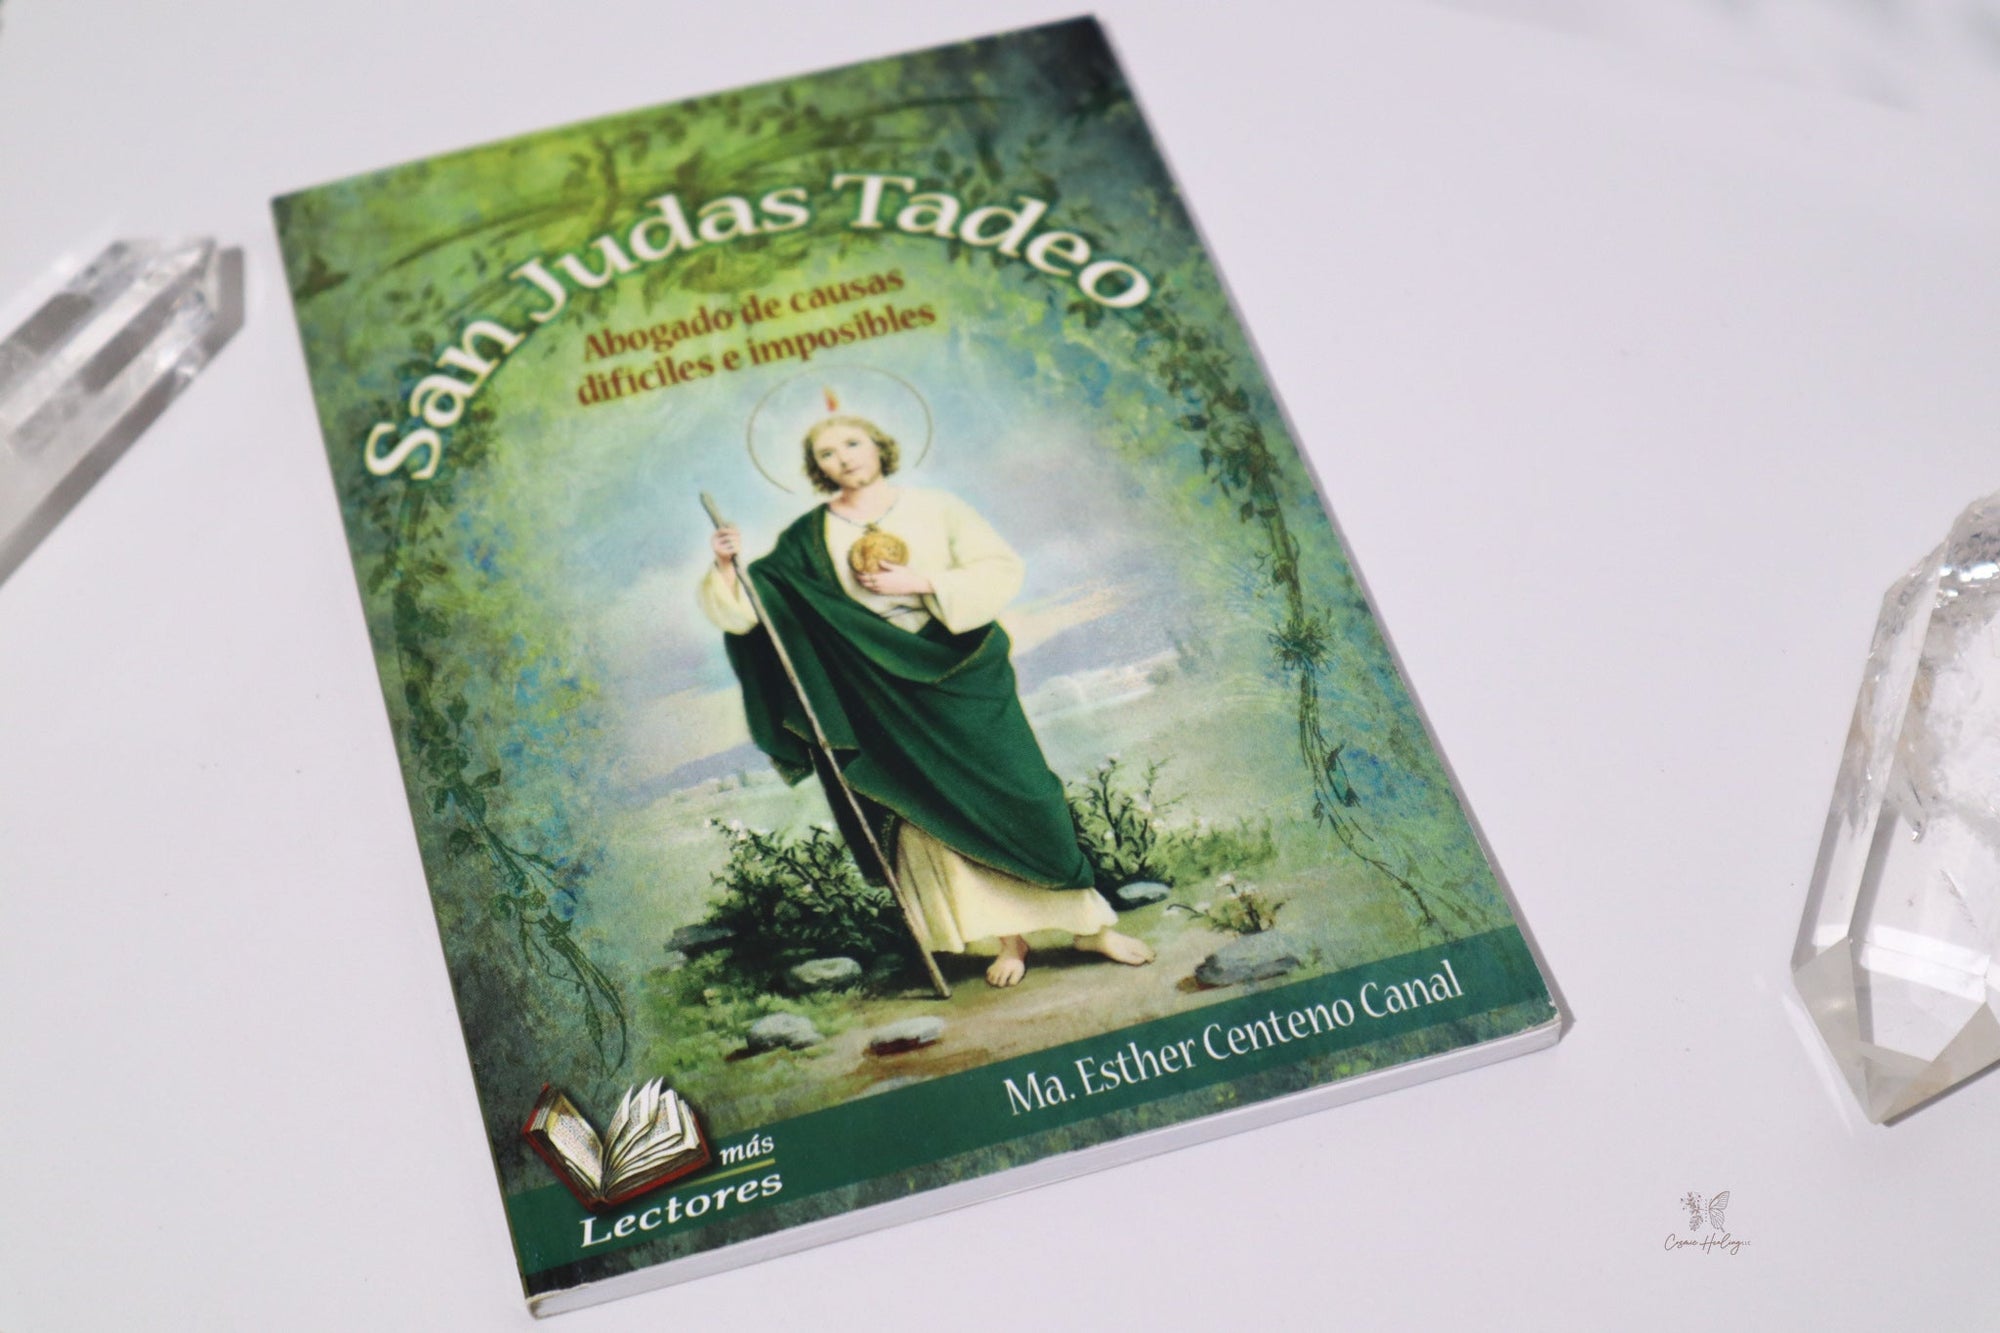 San Judas Tadeo: Abogado de Causas Dificiles e Imposibles - Shop Cosmic Healing